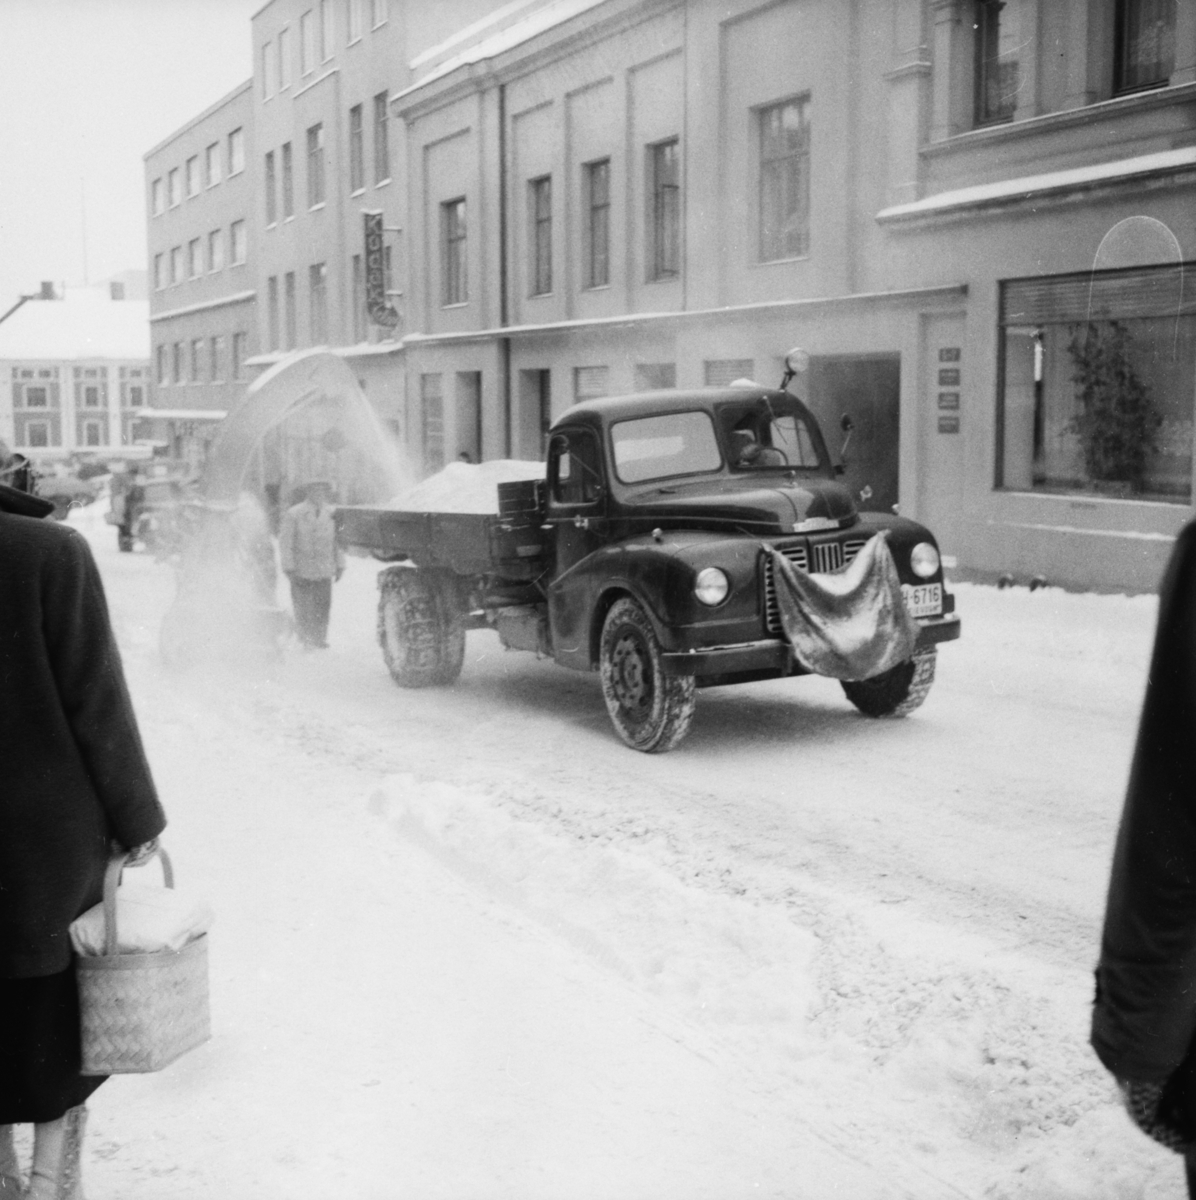 Vardens arkiv. "Snøfreser i aksjon i Skiens gater"  18.02.1954